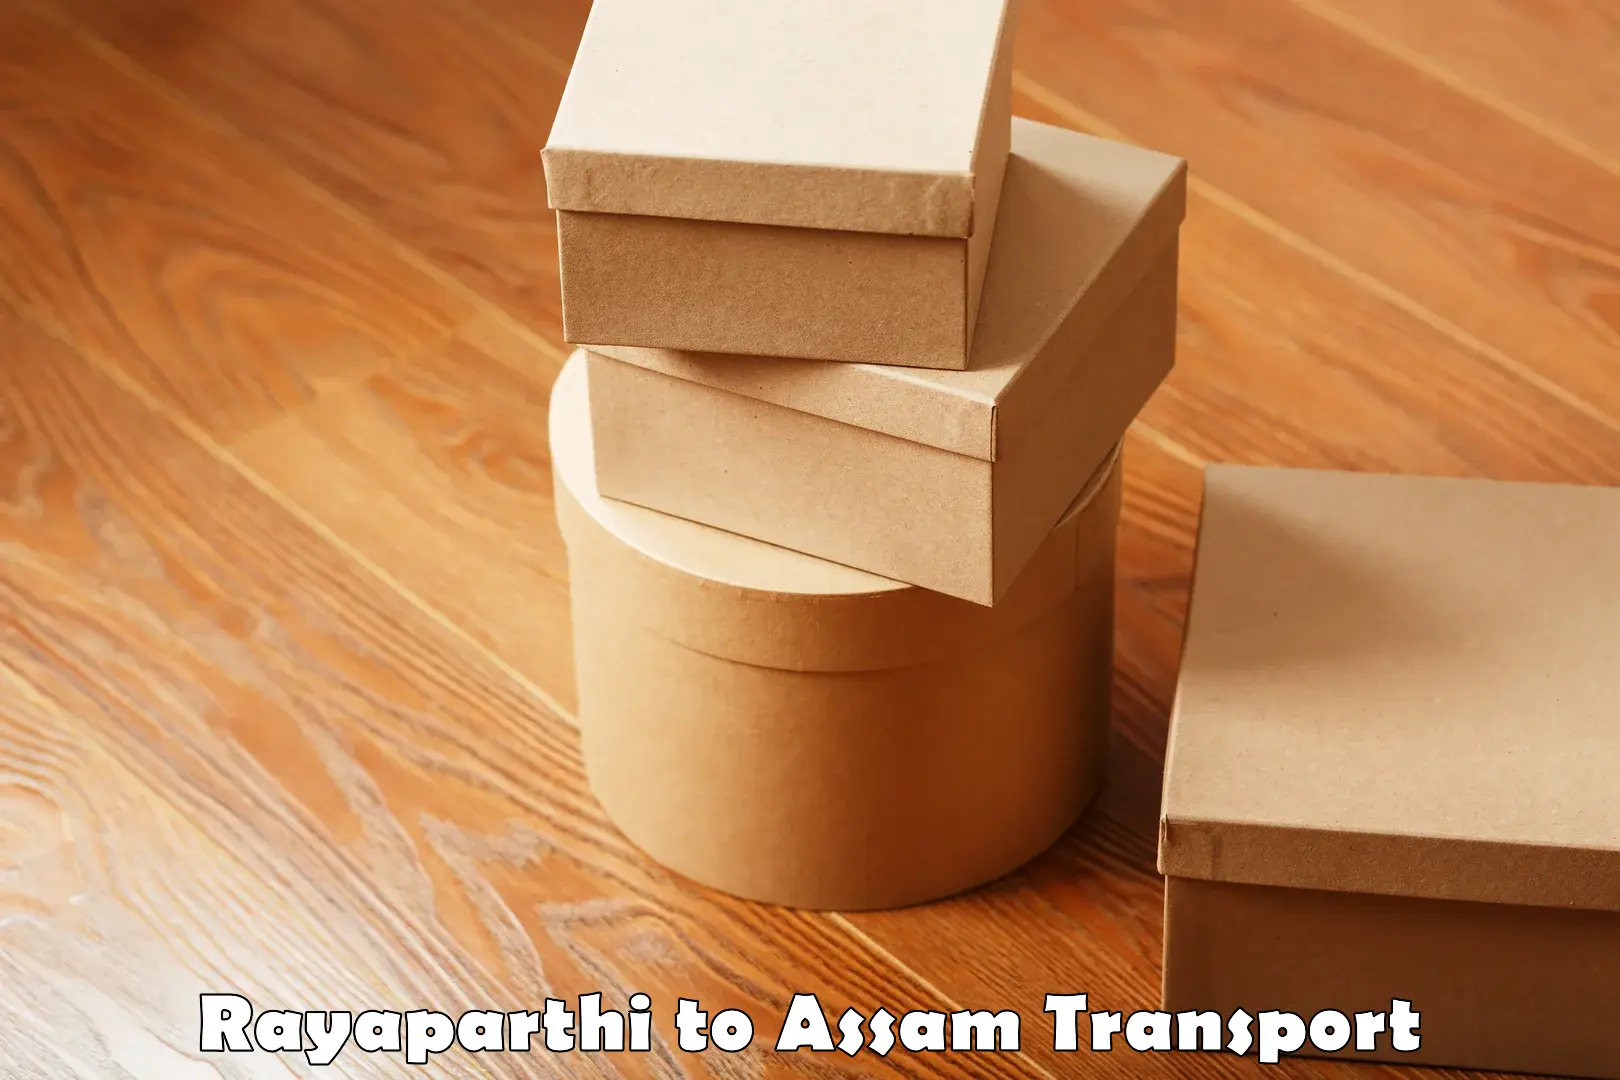 Vehicle transport services Rayaparthi to Bhergaon